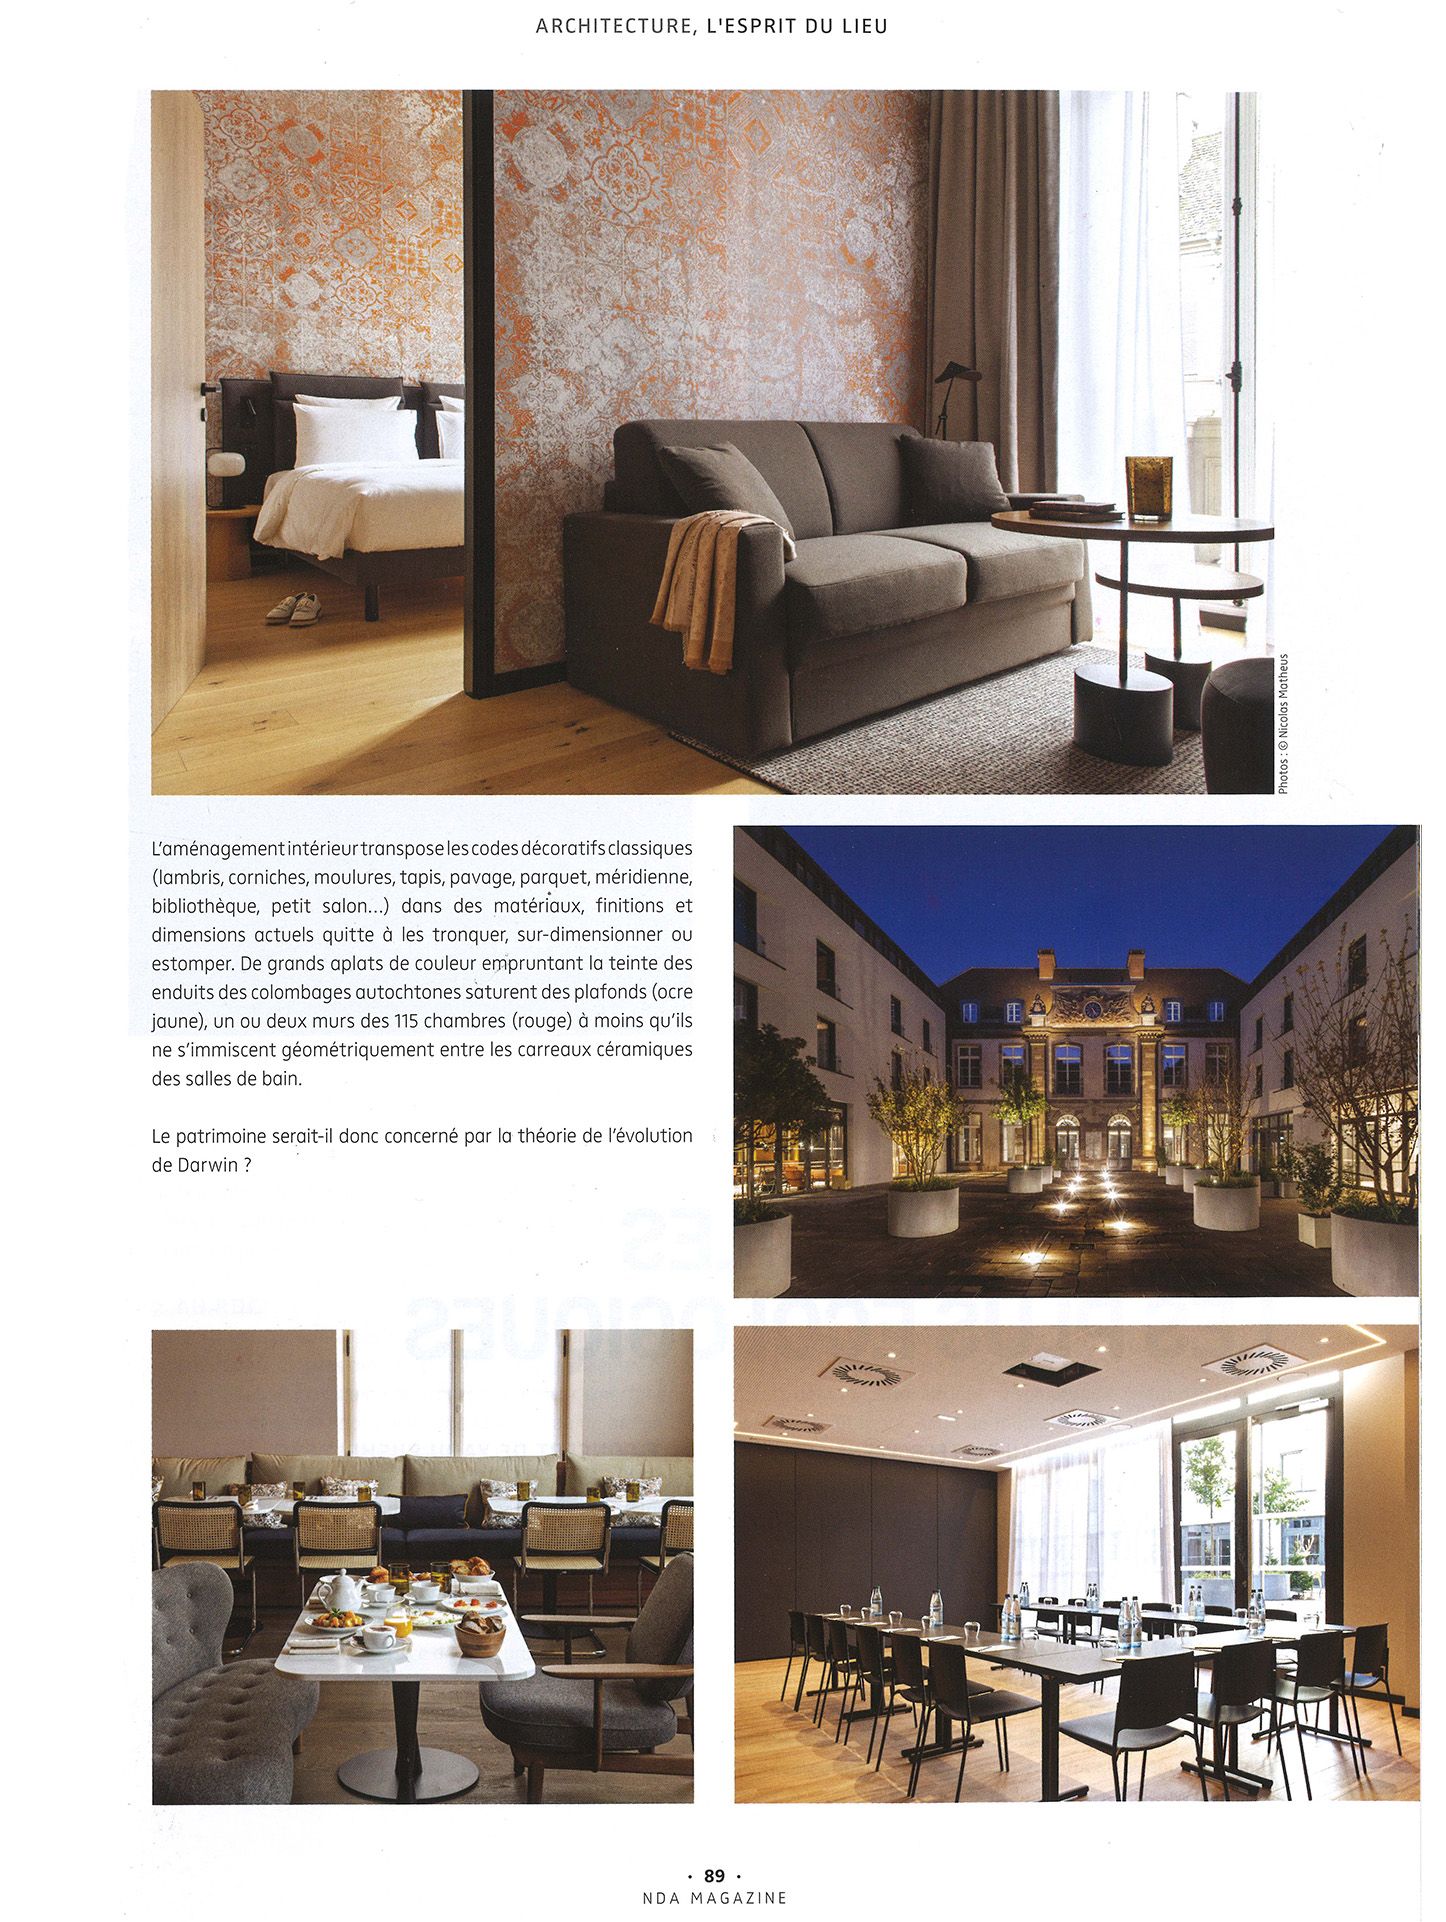 Article de NDA Magazine sur la réhabilitation d'un palais de justice à Strasbourg en un hôtel de luxe par le studio jean-philippe nuel